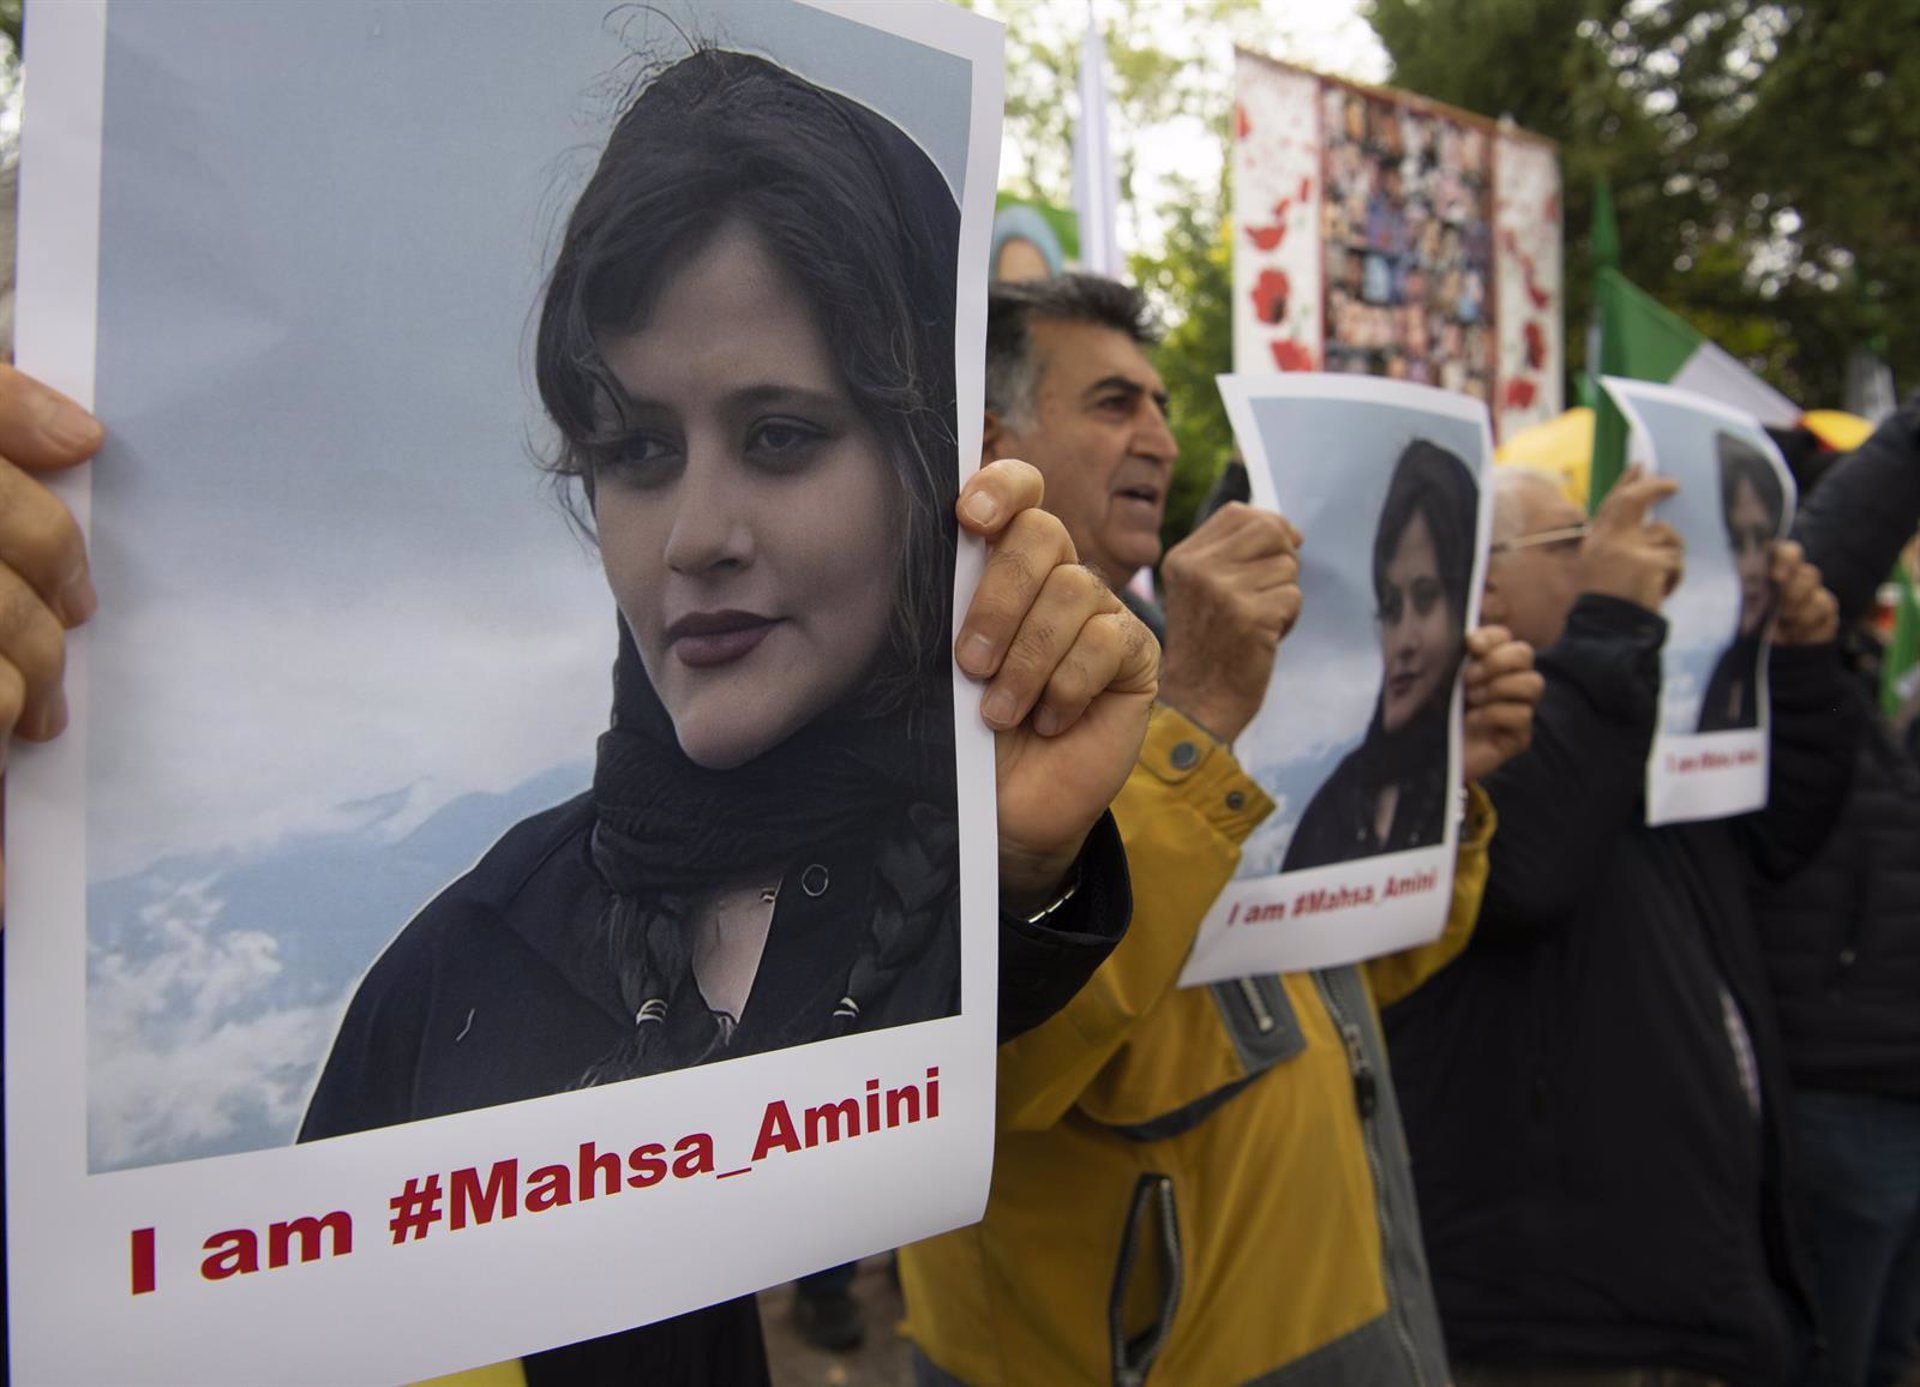 Una protesta organizada por el Consejo Nacional de Resistencia de Irán frente a la Embajada iraní en Berlín tras la muerte bajo custodia de Mahsa Amini
POLITICA INTERNACIONAL
Paul Zinken/dpa
